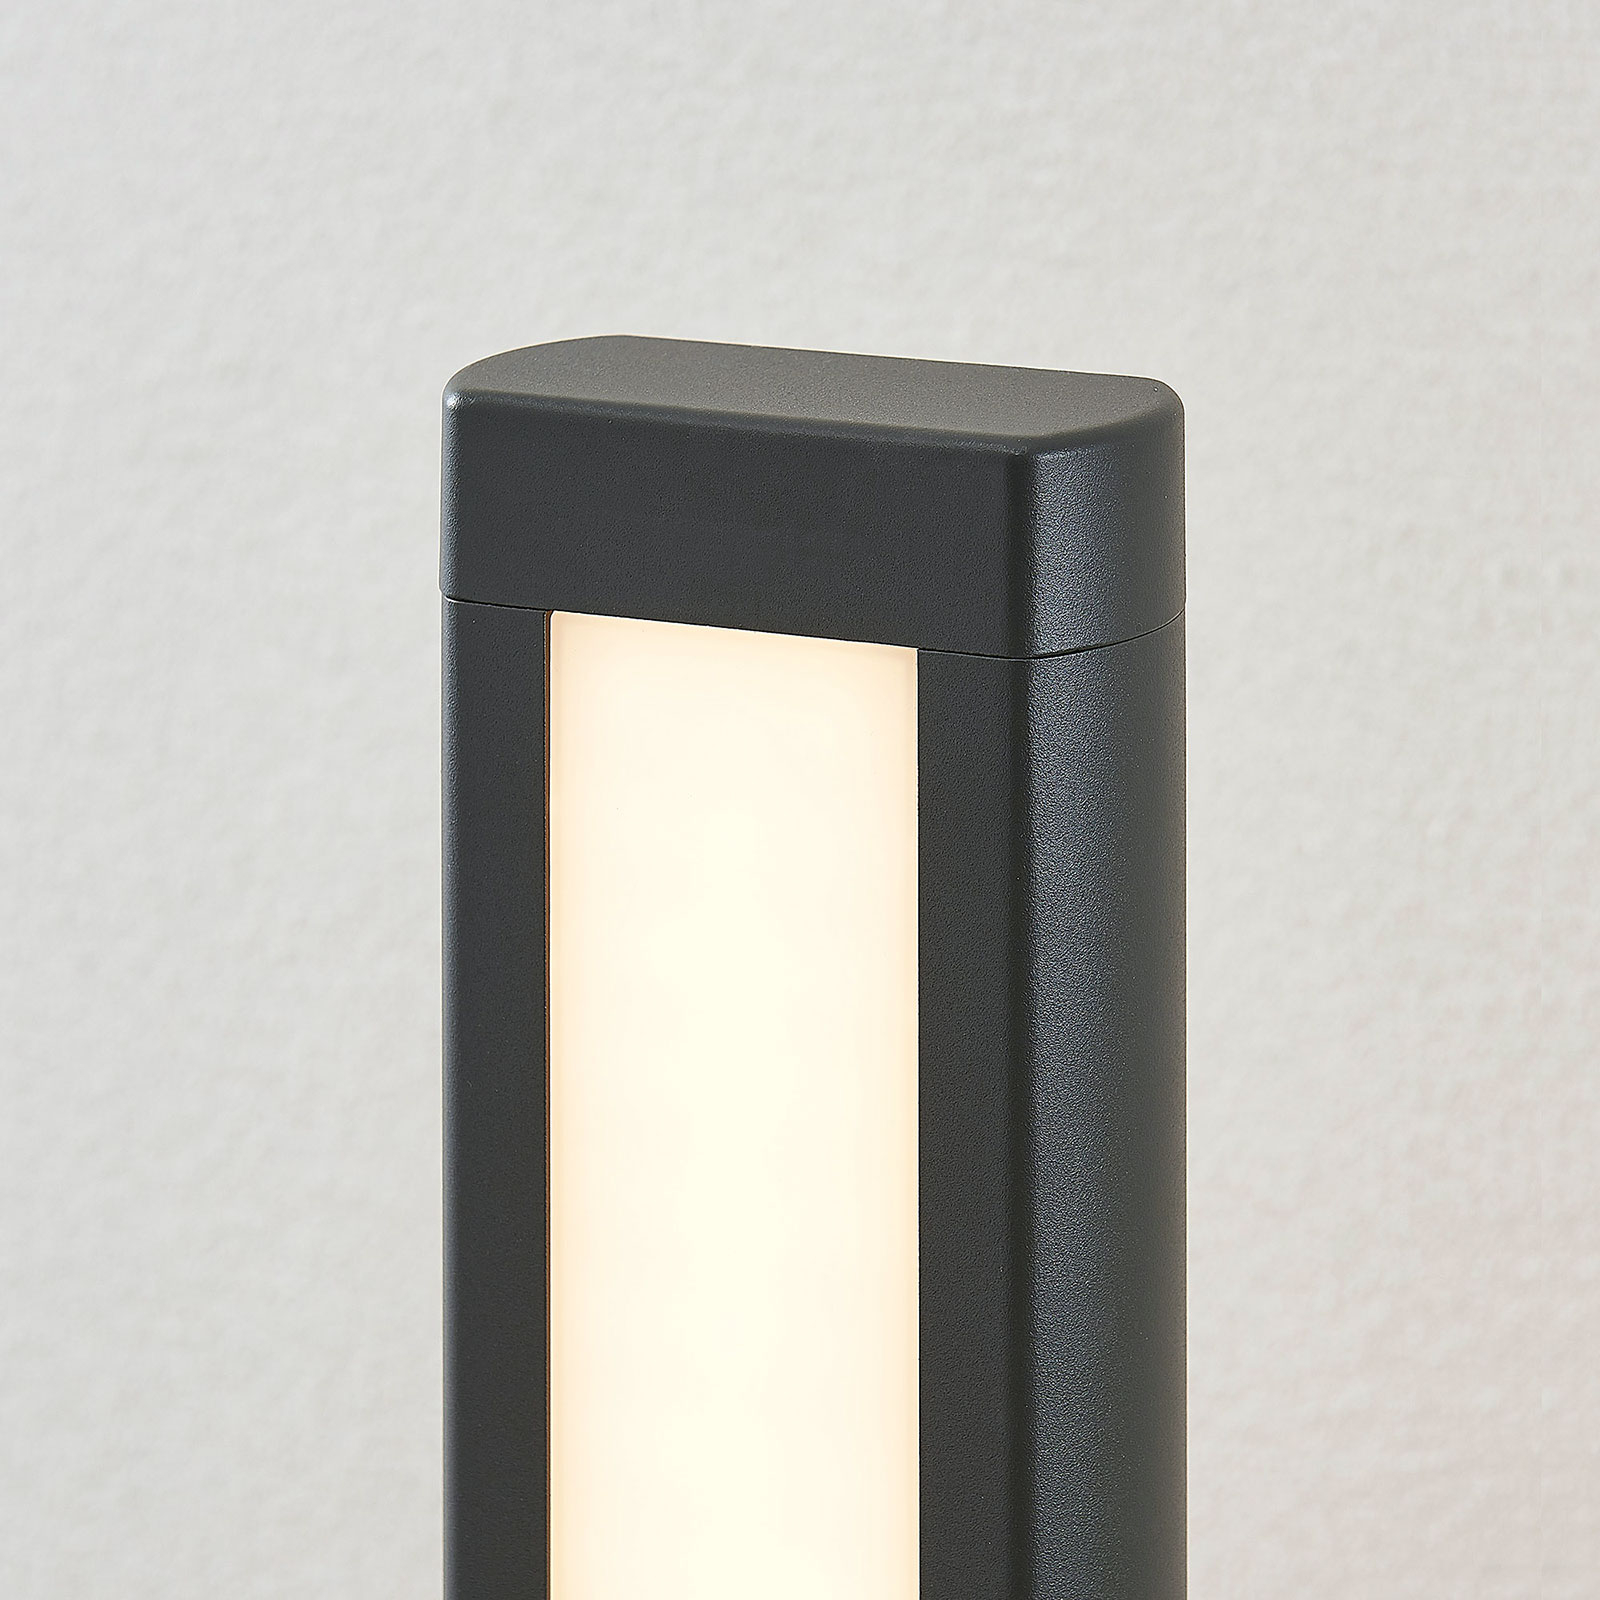 LED-gatelampe Mhairi, kantet, mørk grå, 100 cm